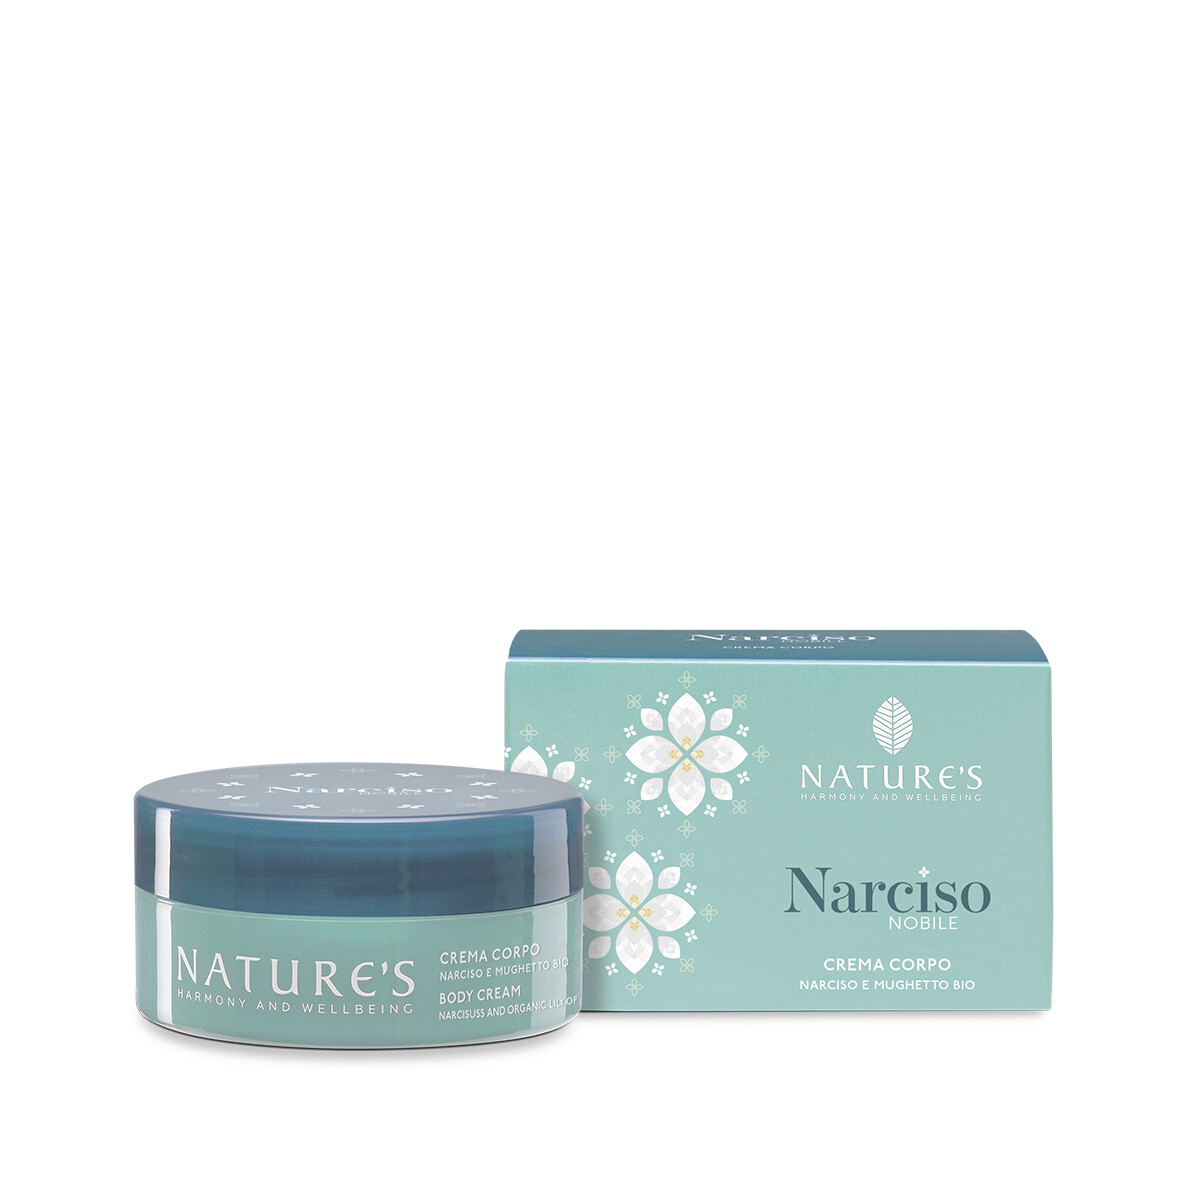 Crema Corpo - Narciso Nobile - Nature's